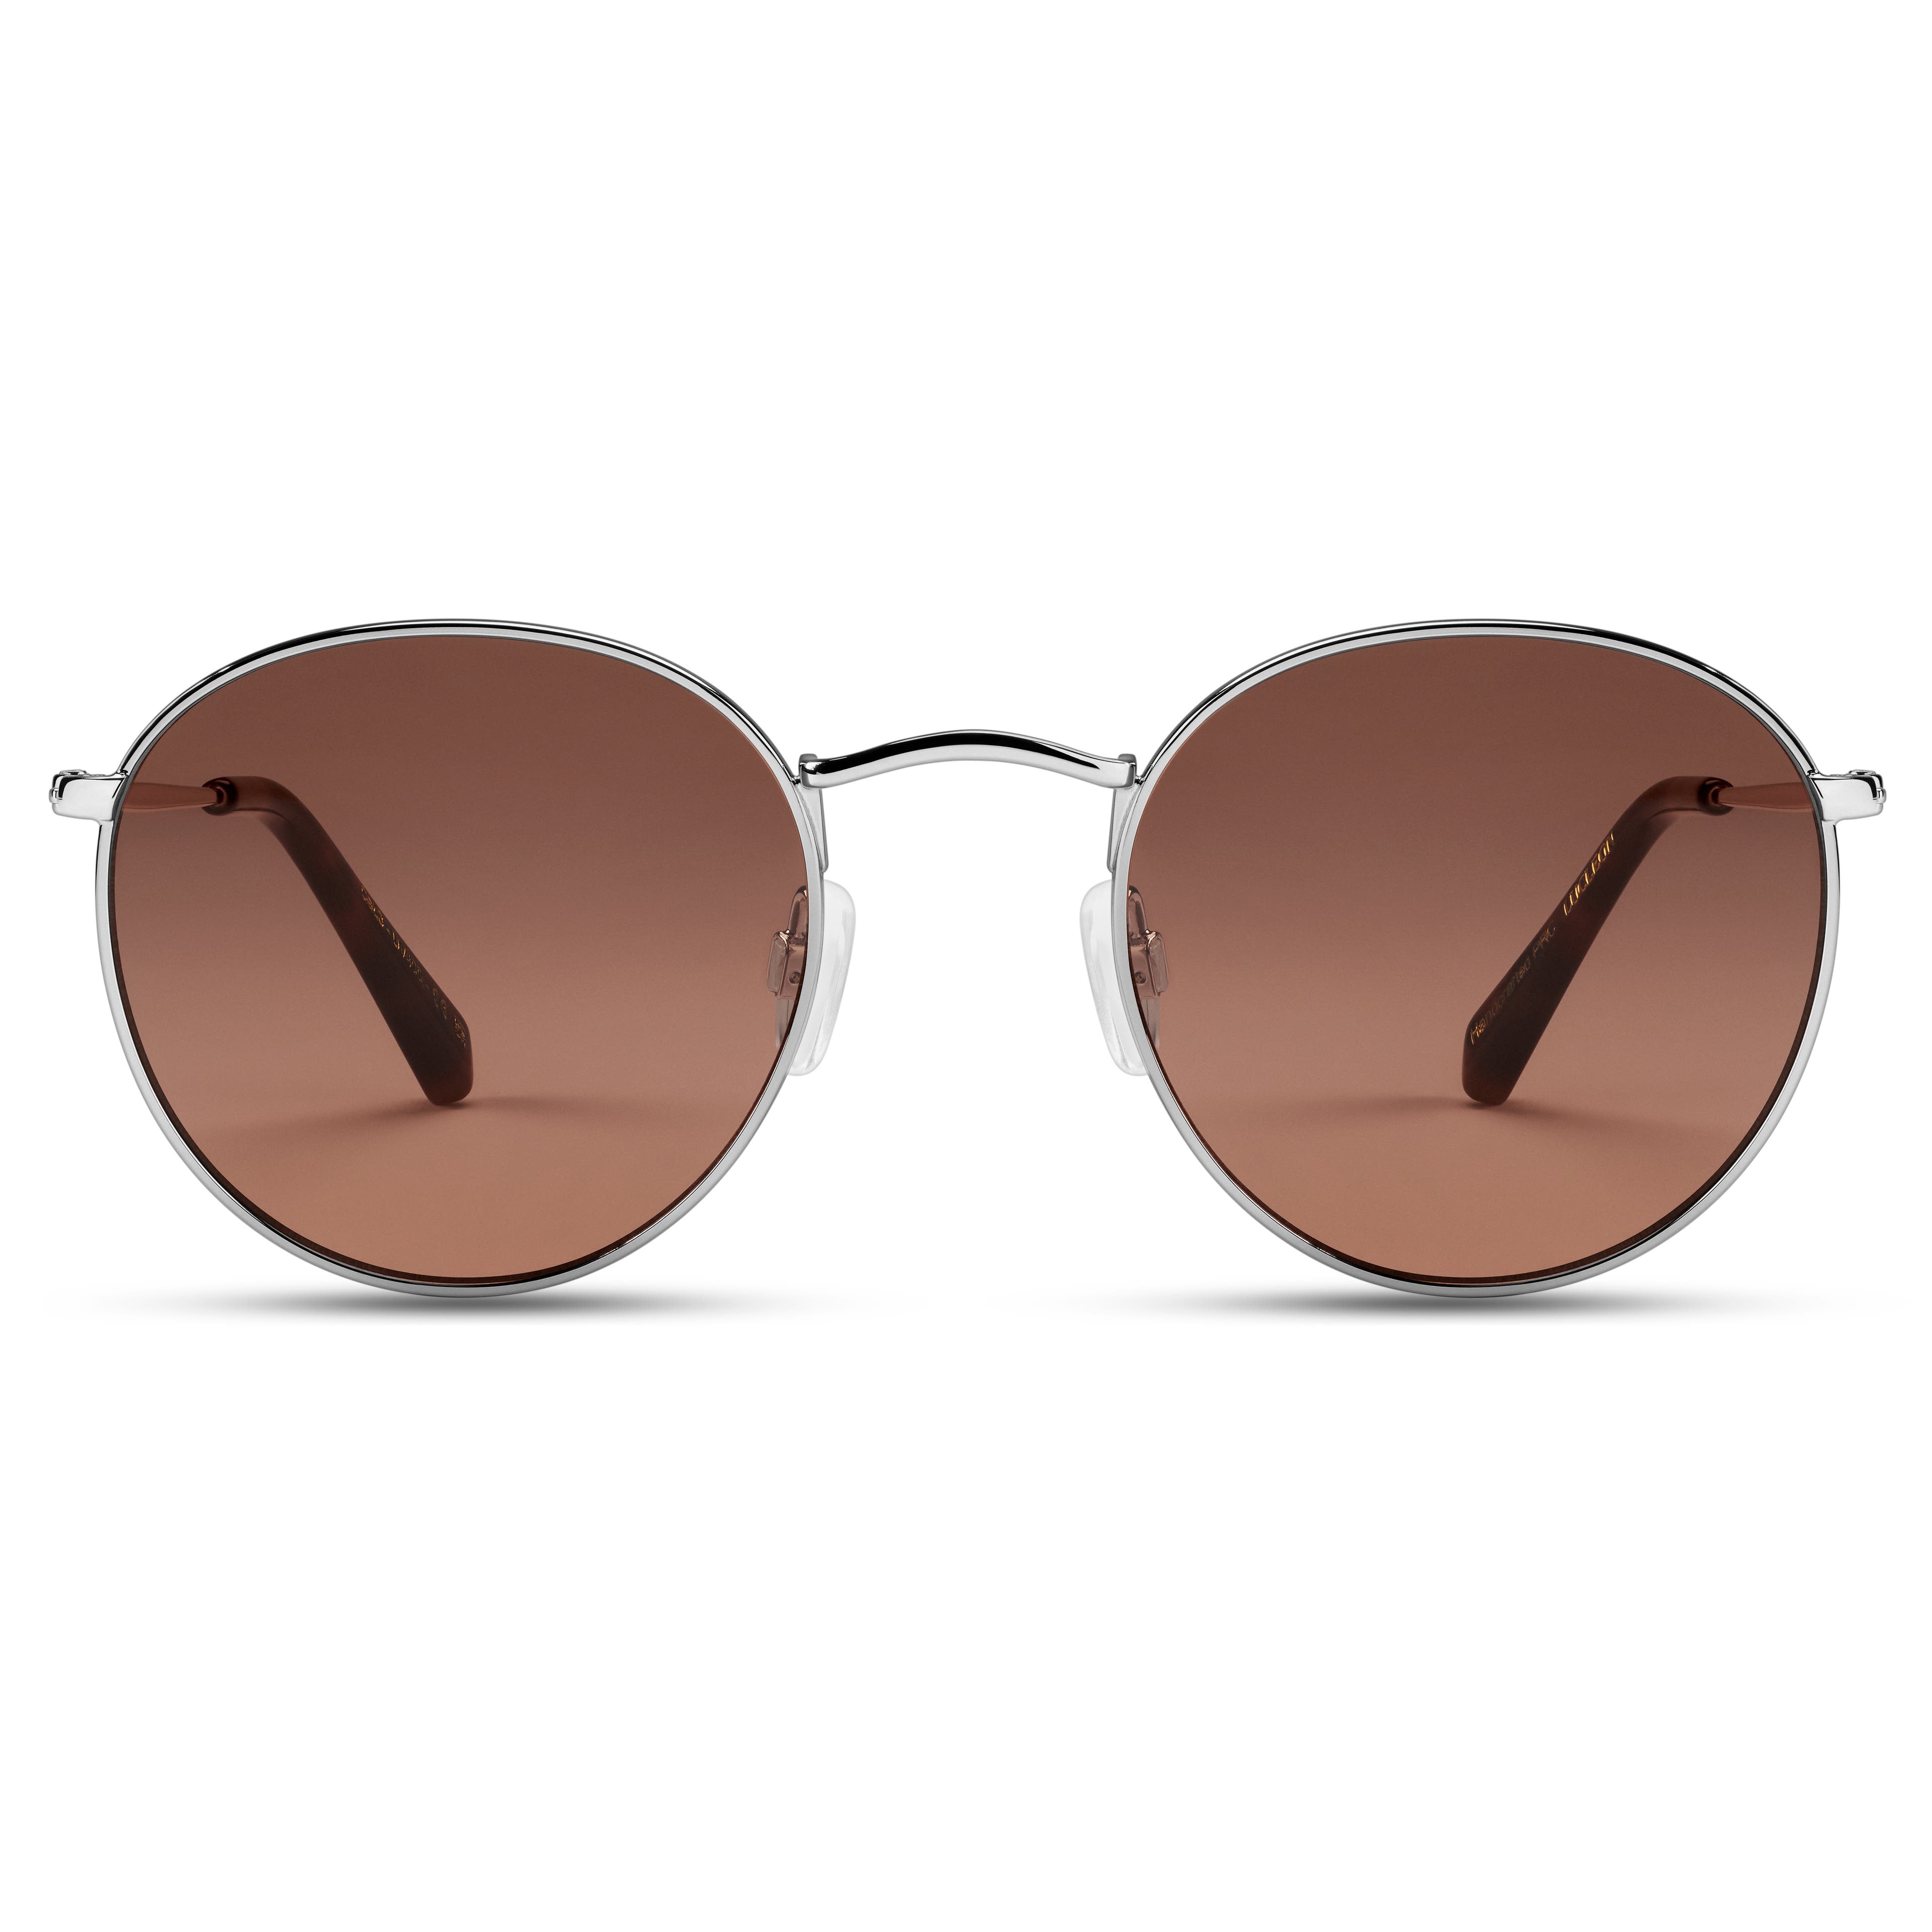 Okrągłe srebrzyste okulary przeciwsłoneczne Lennonki